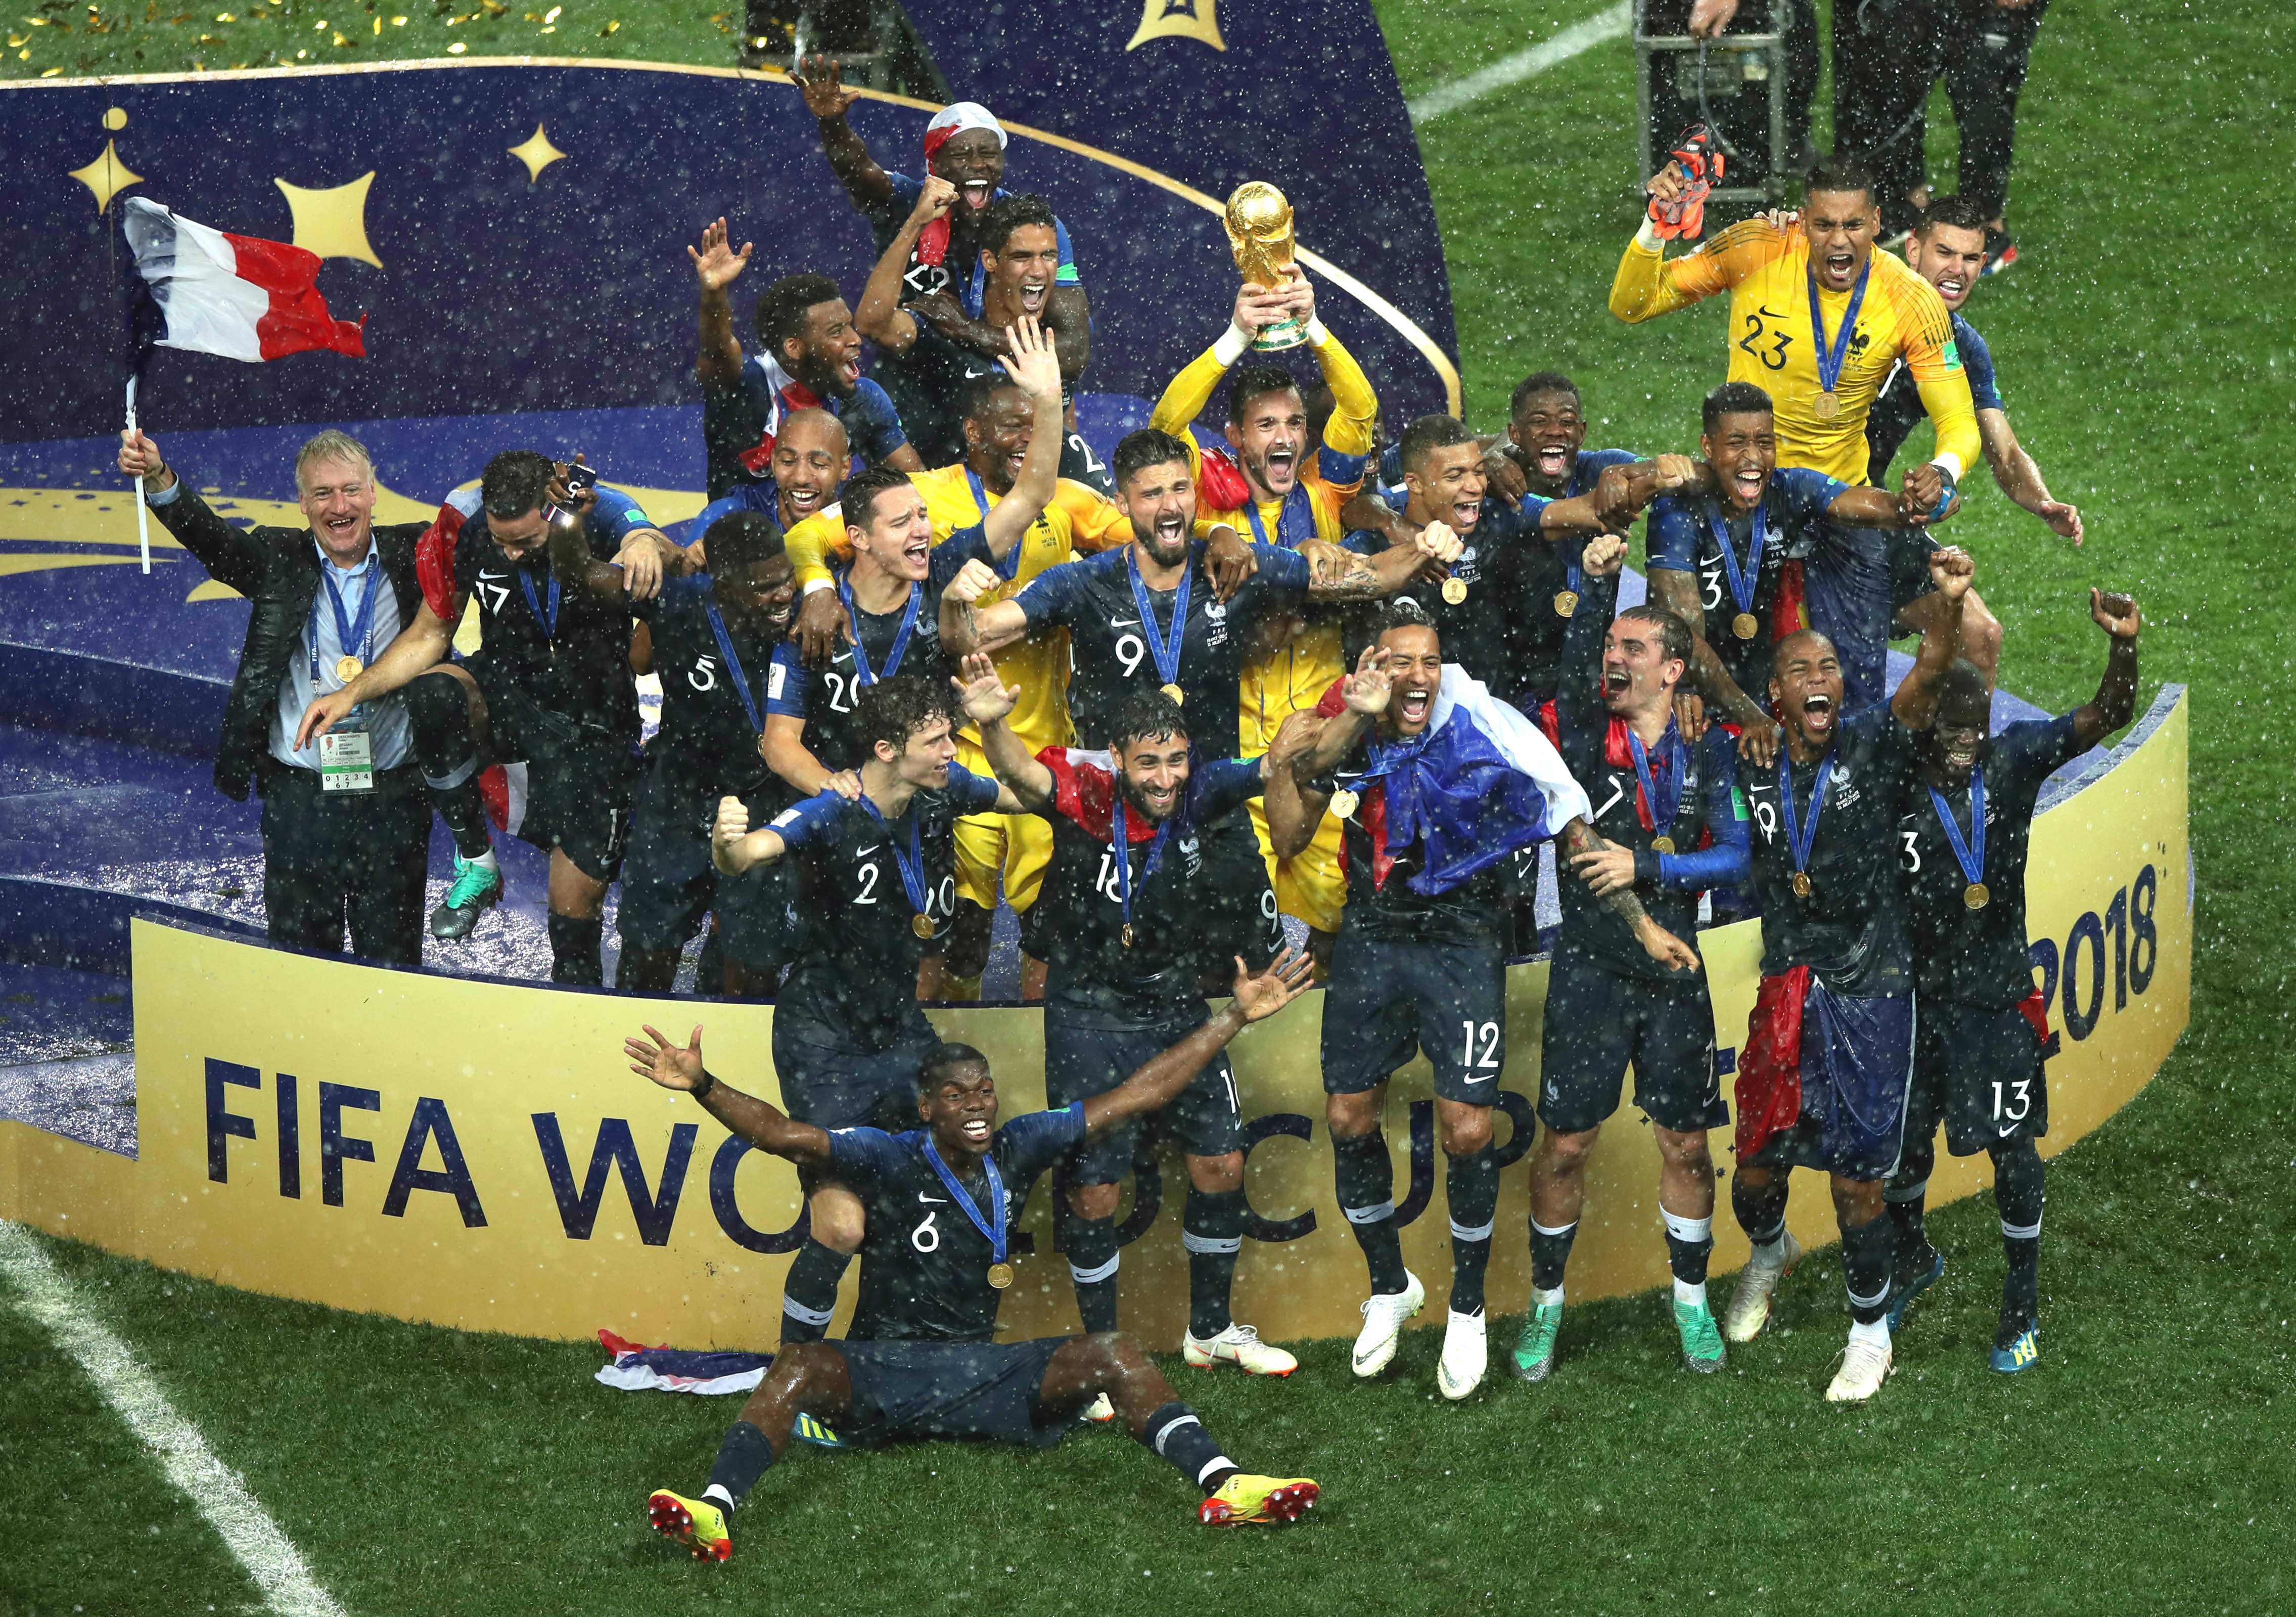 98年法国世界杯主力阵容_2014南美解放者杯冠军主力阵容_法国2018世界杯主力阵容